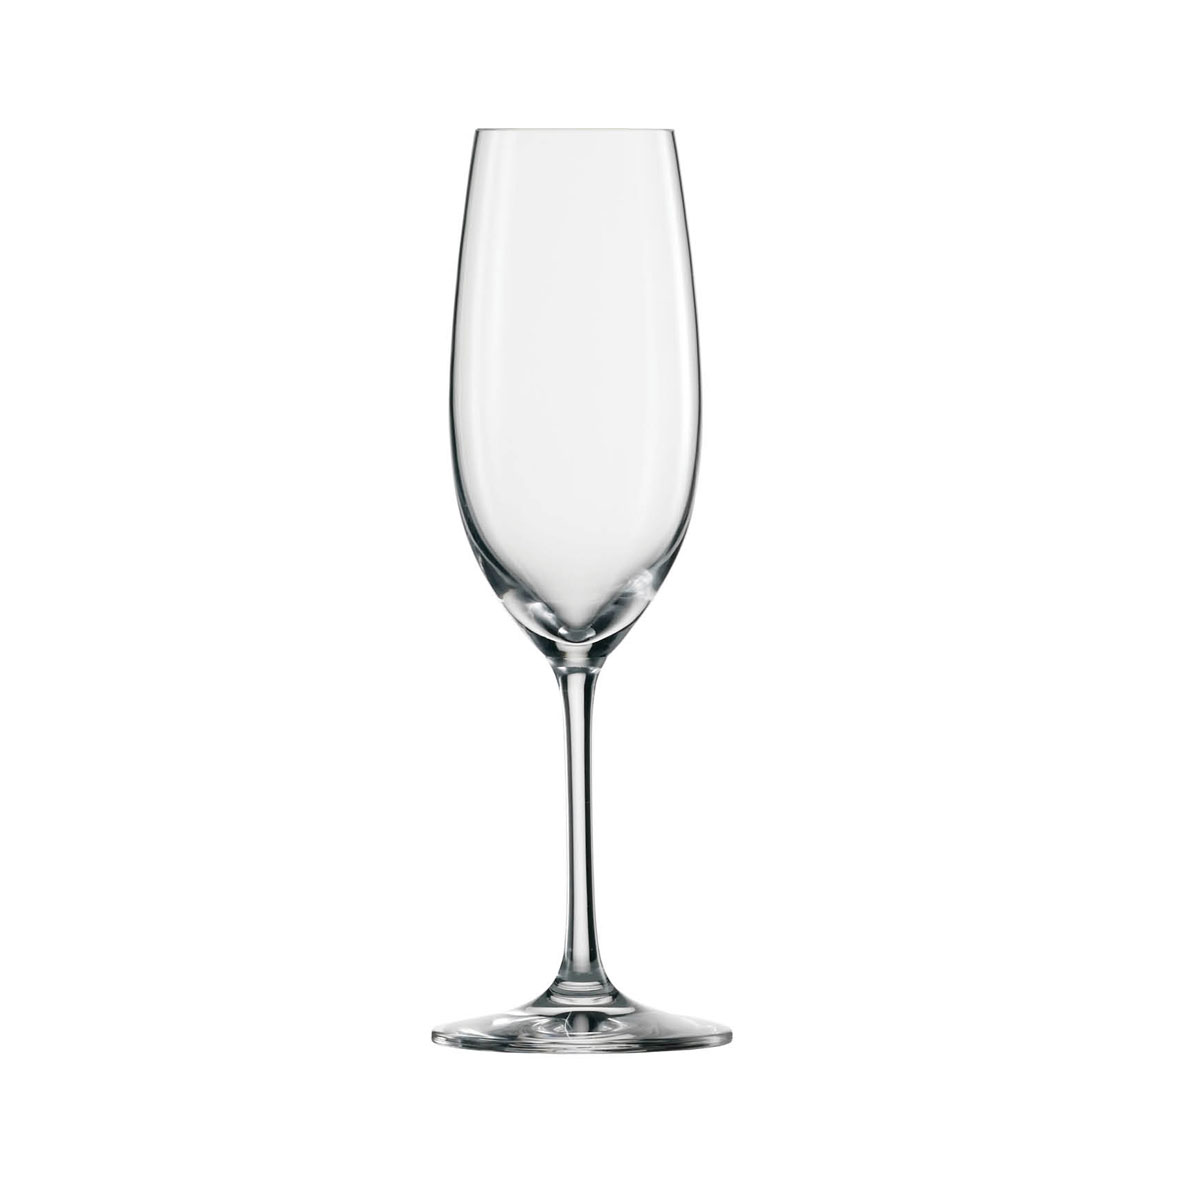 Schott Zwiesel Tritan Ivento Champagne Glass, Single